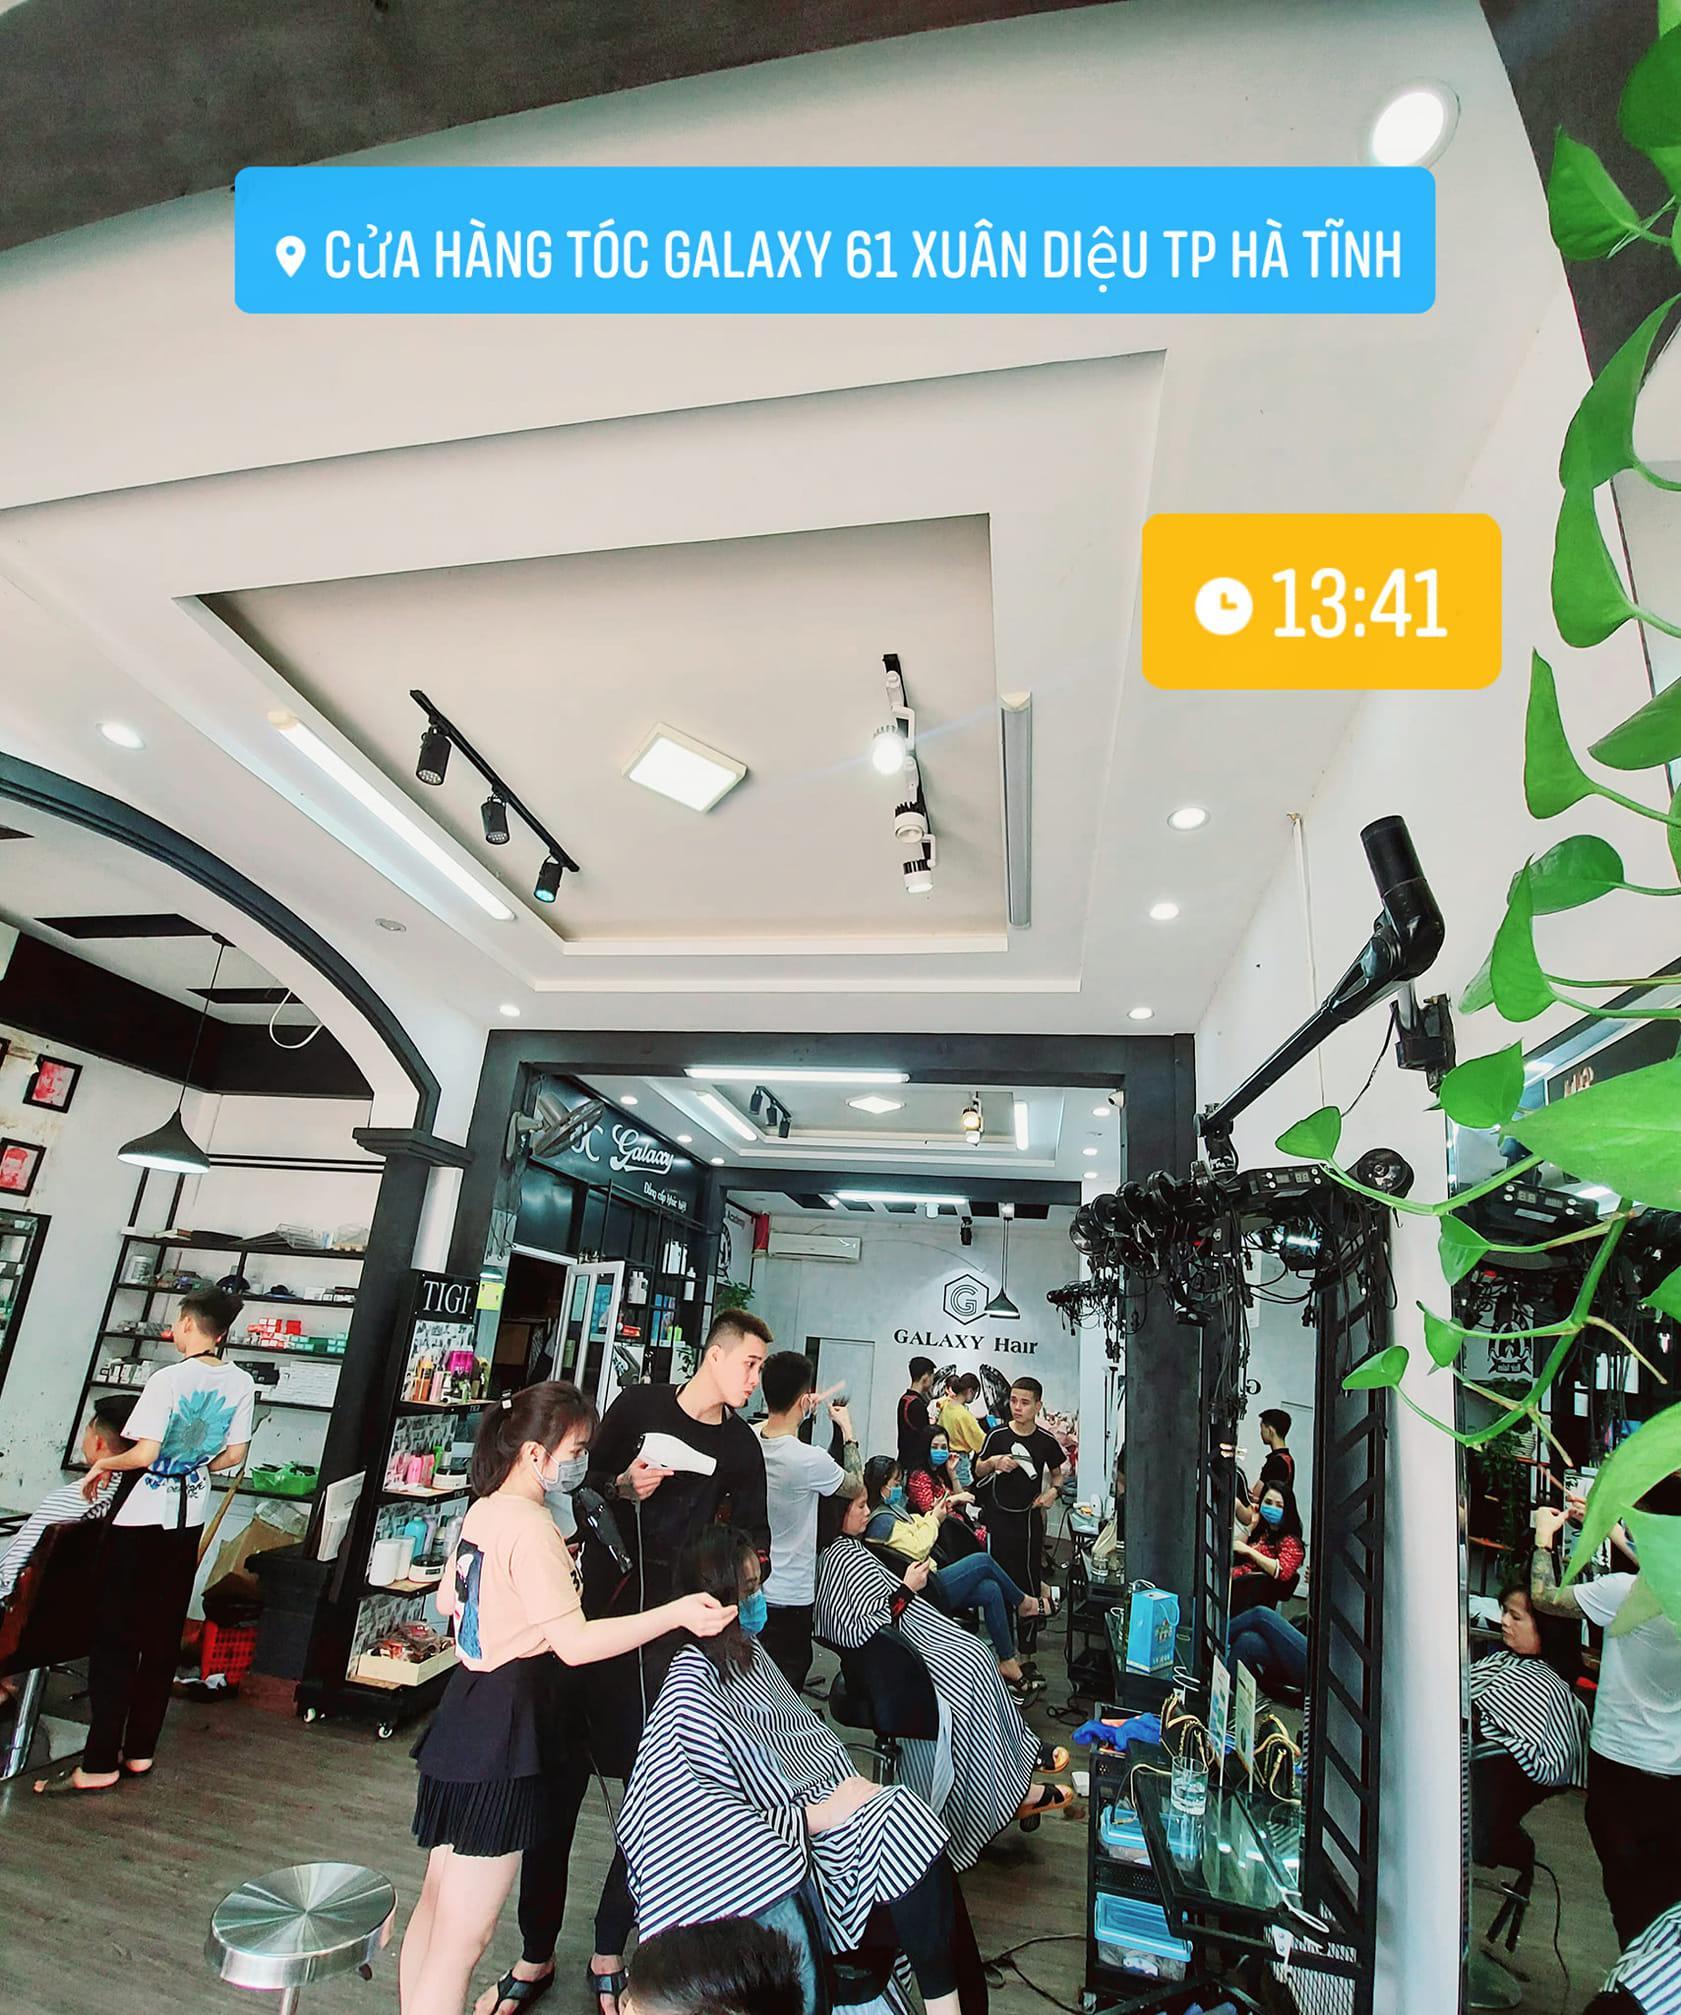 Hair Salon Galaxy thành phố Hà Tĩnh - Hà Tĩnh Có Gì